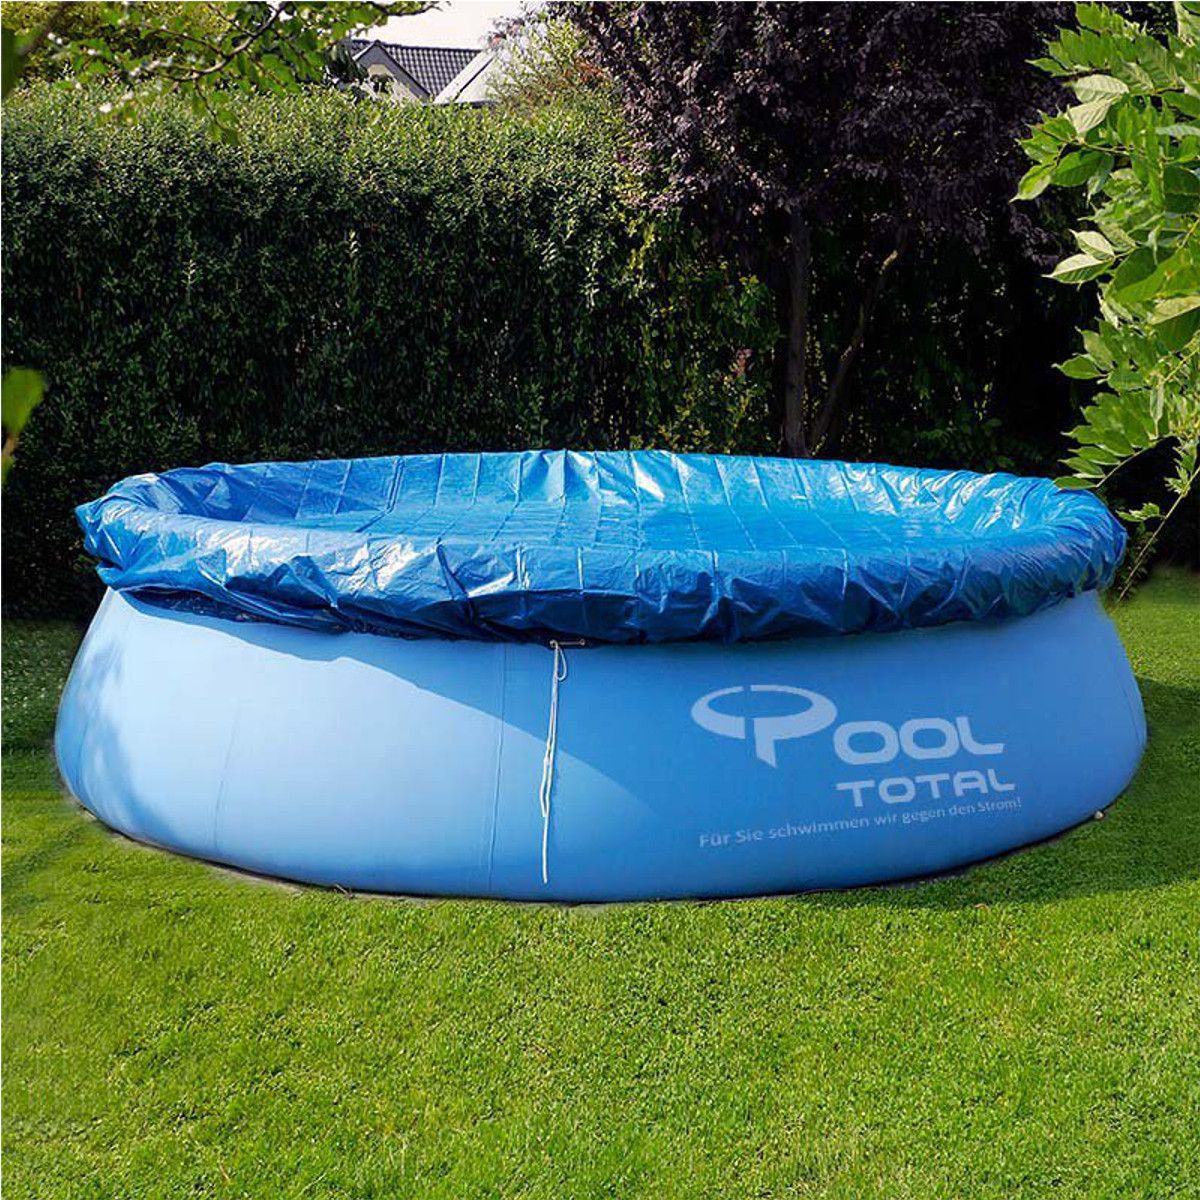 Circular-Swimming-Pool-Cover-Roller-Fit-81012-feet-Diameter-Family-Garden-Pool-Tarpaulin-Sheet-1353403